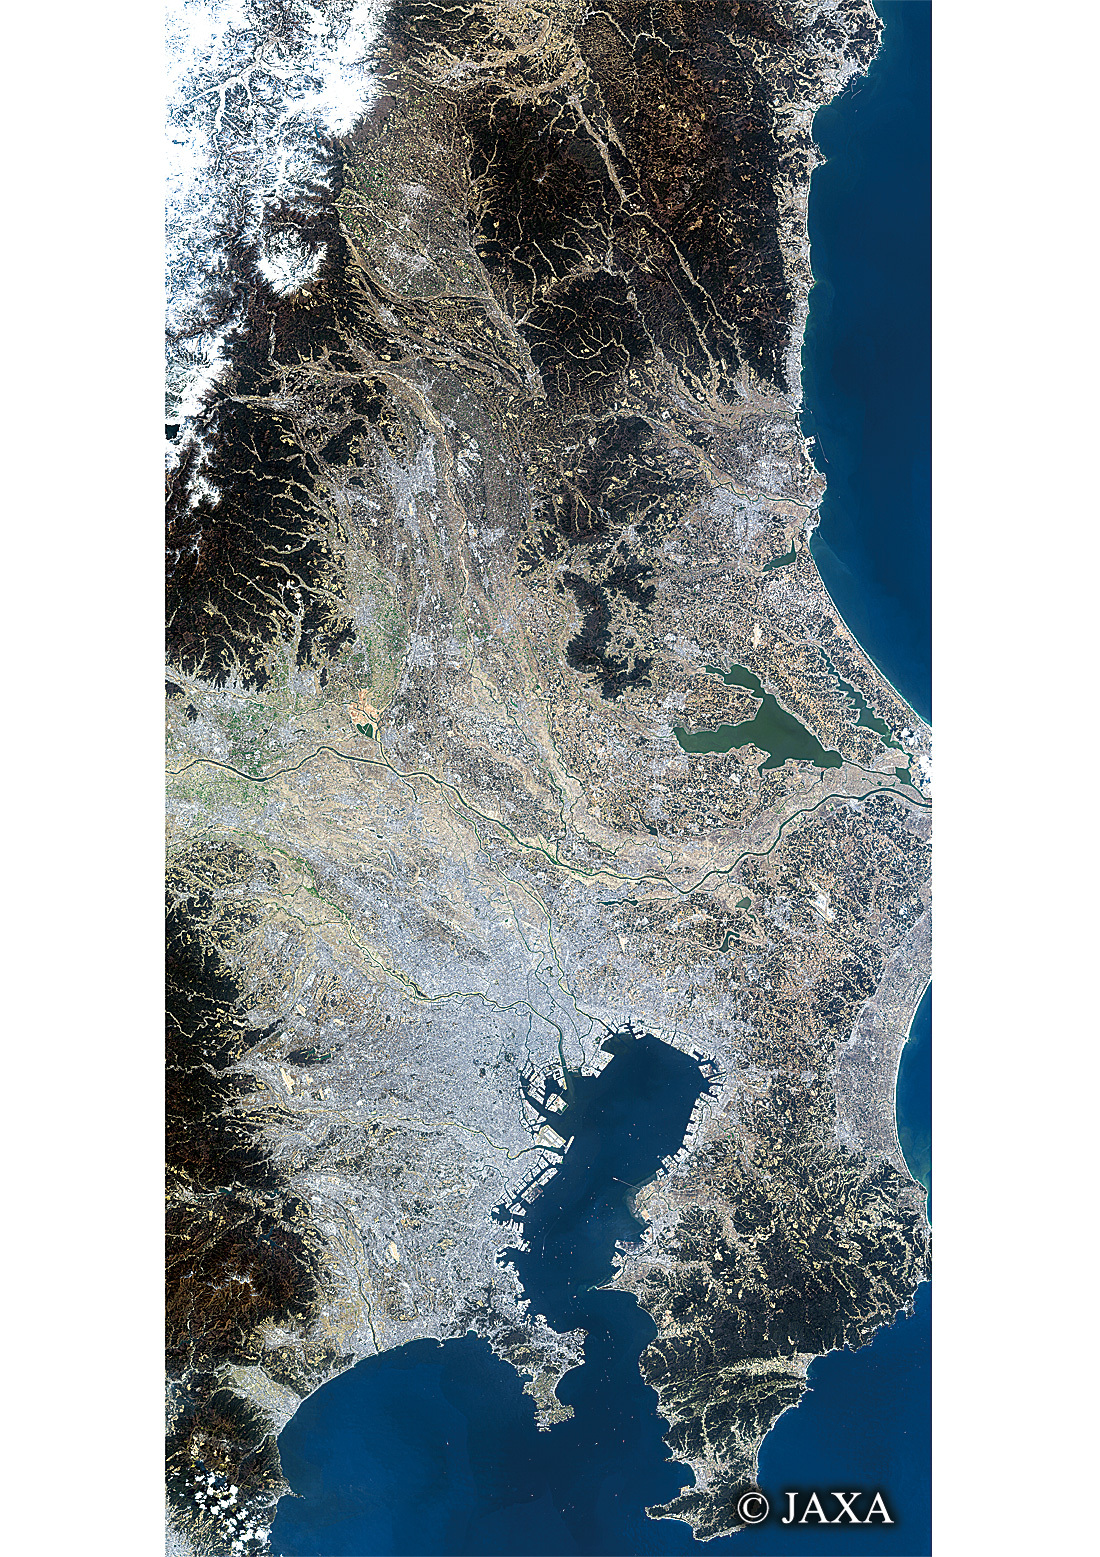 だいちから見た日本の都市 関東:衛星画像